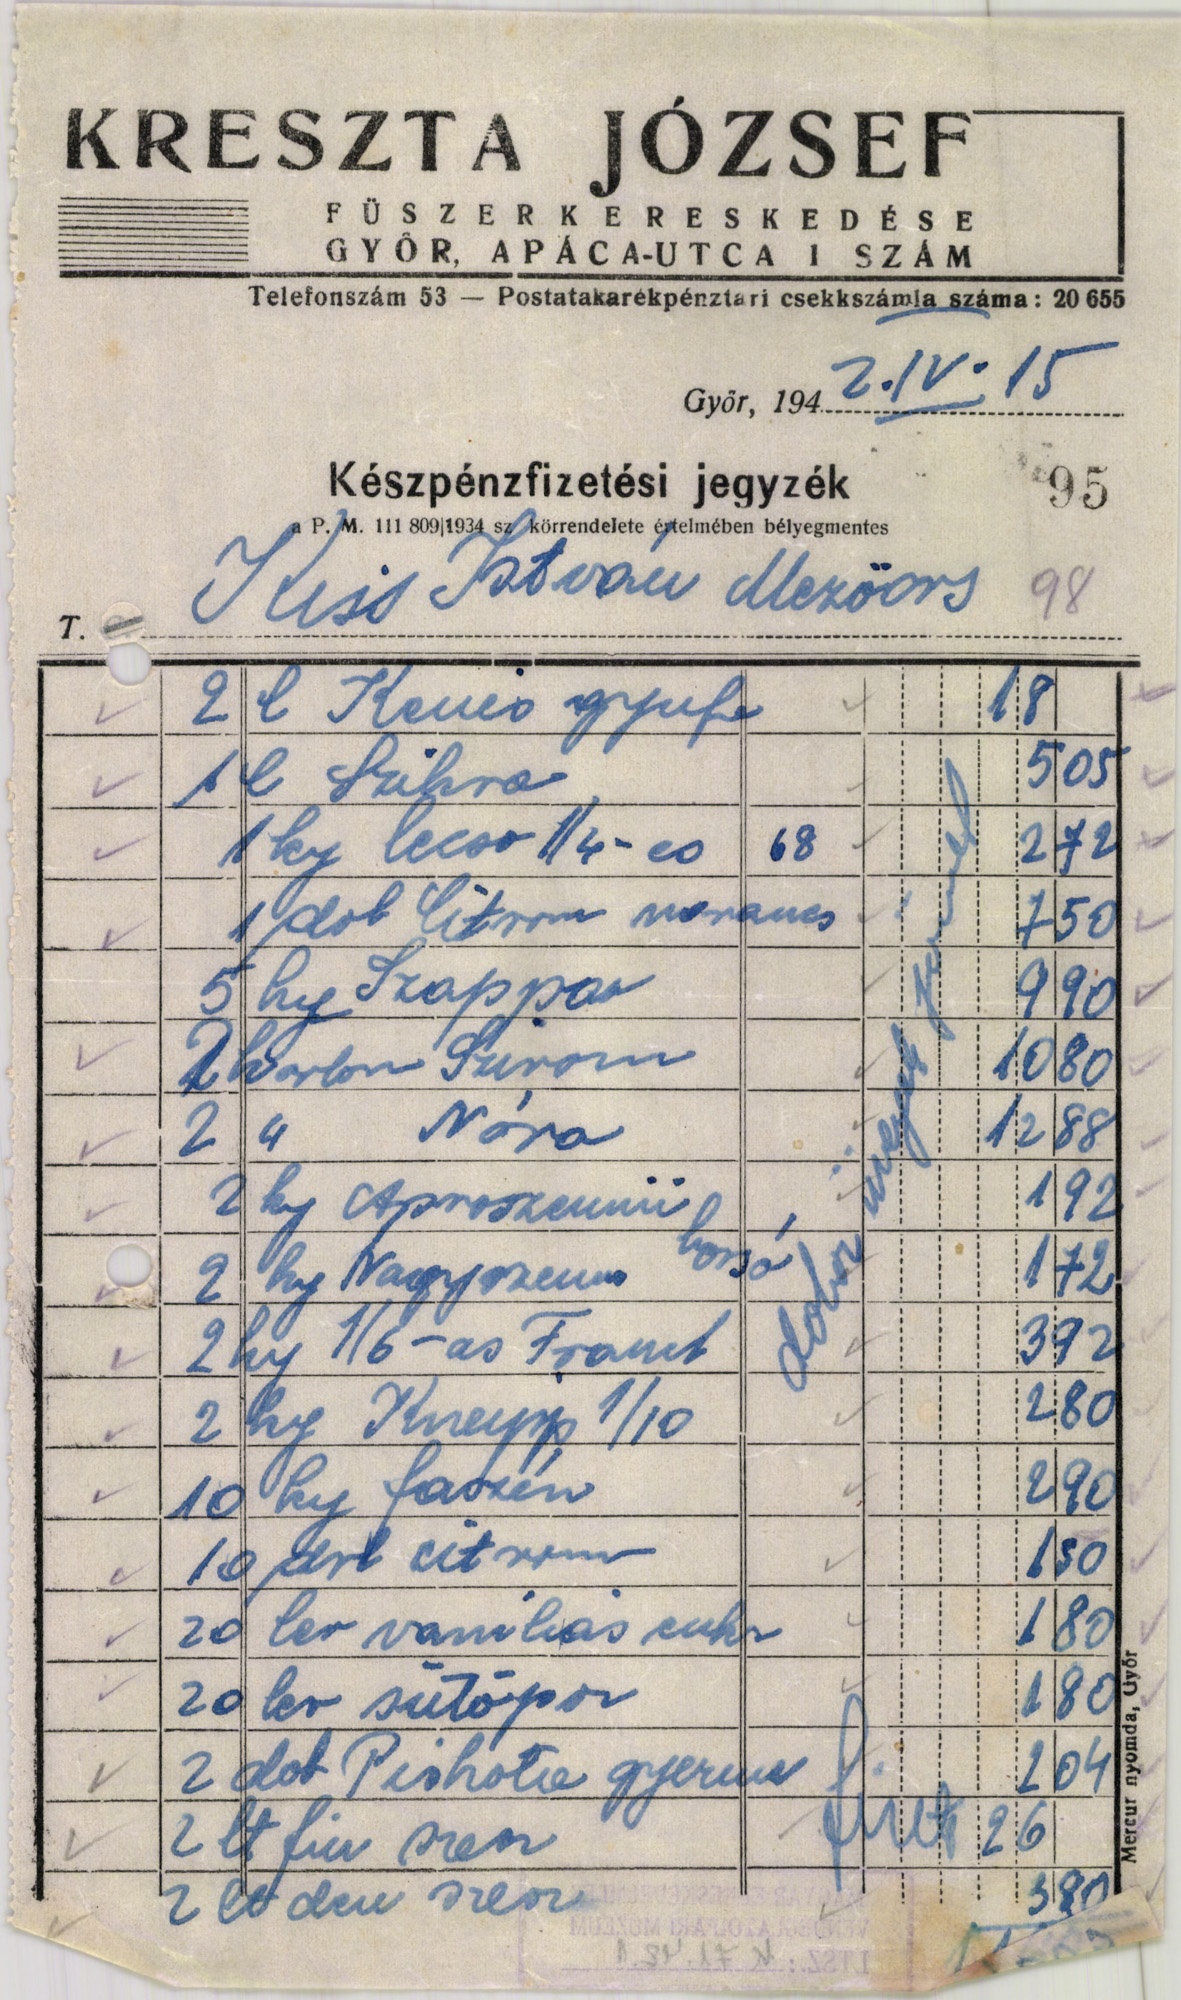 Kreszta József fűszerkereskedése (Magyar Kereskedelmi és Vendéglátóipari Múzeum CC BY-NC-SA)